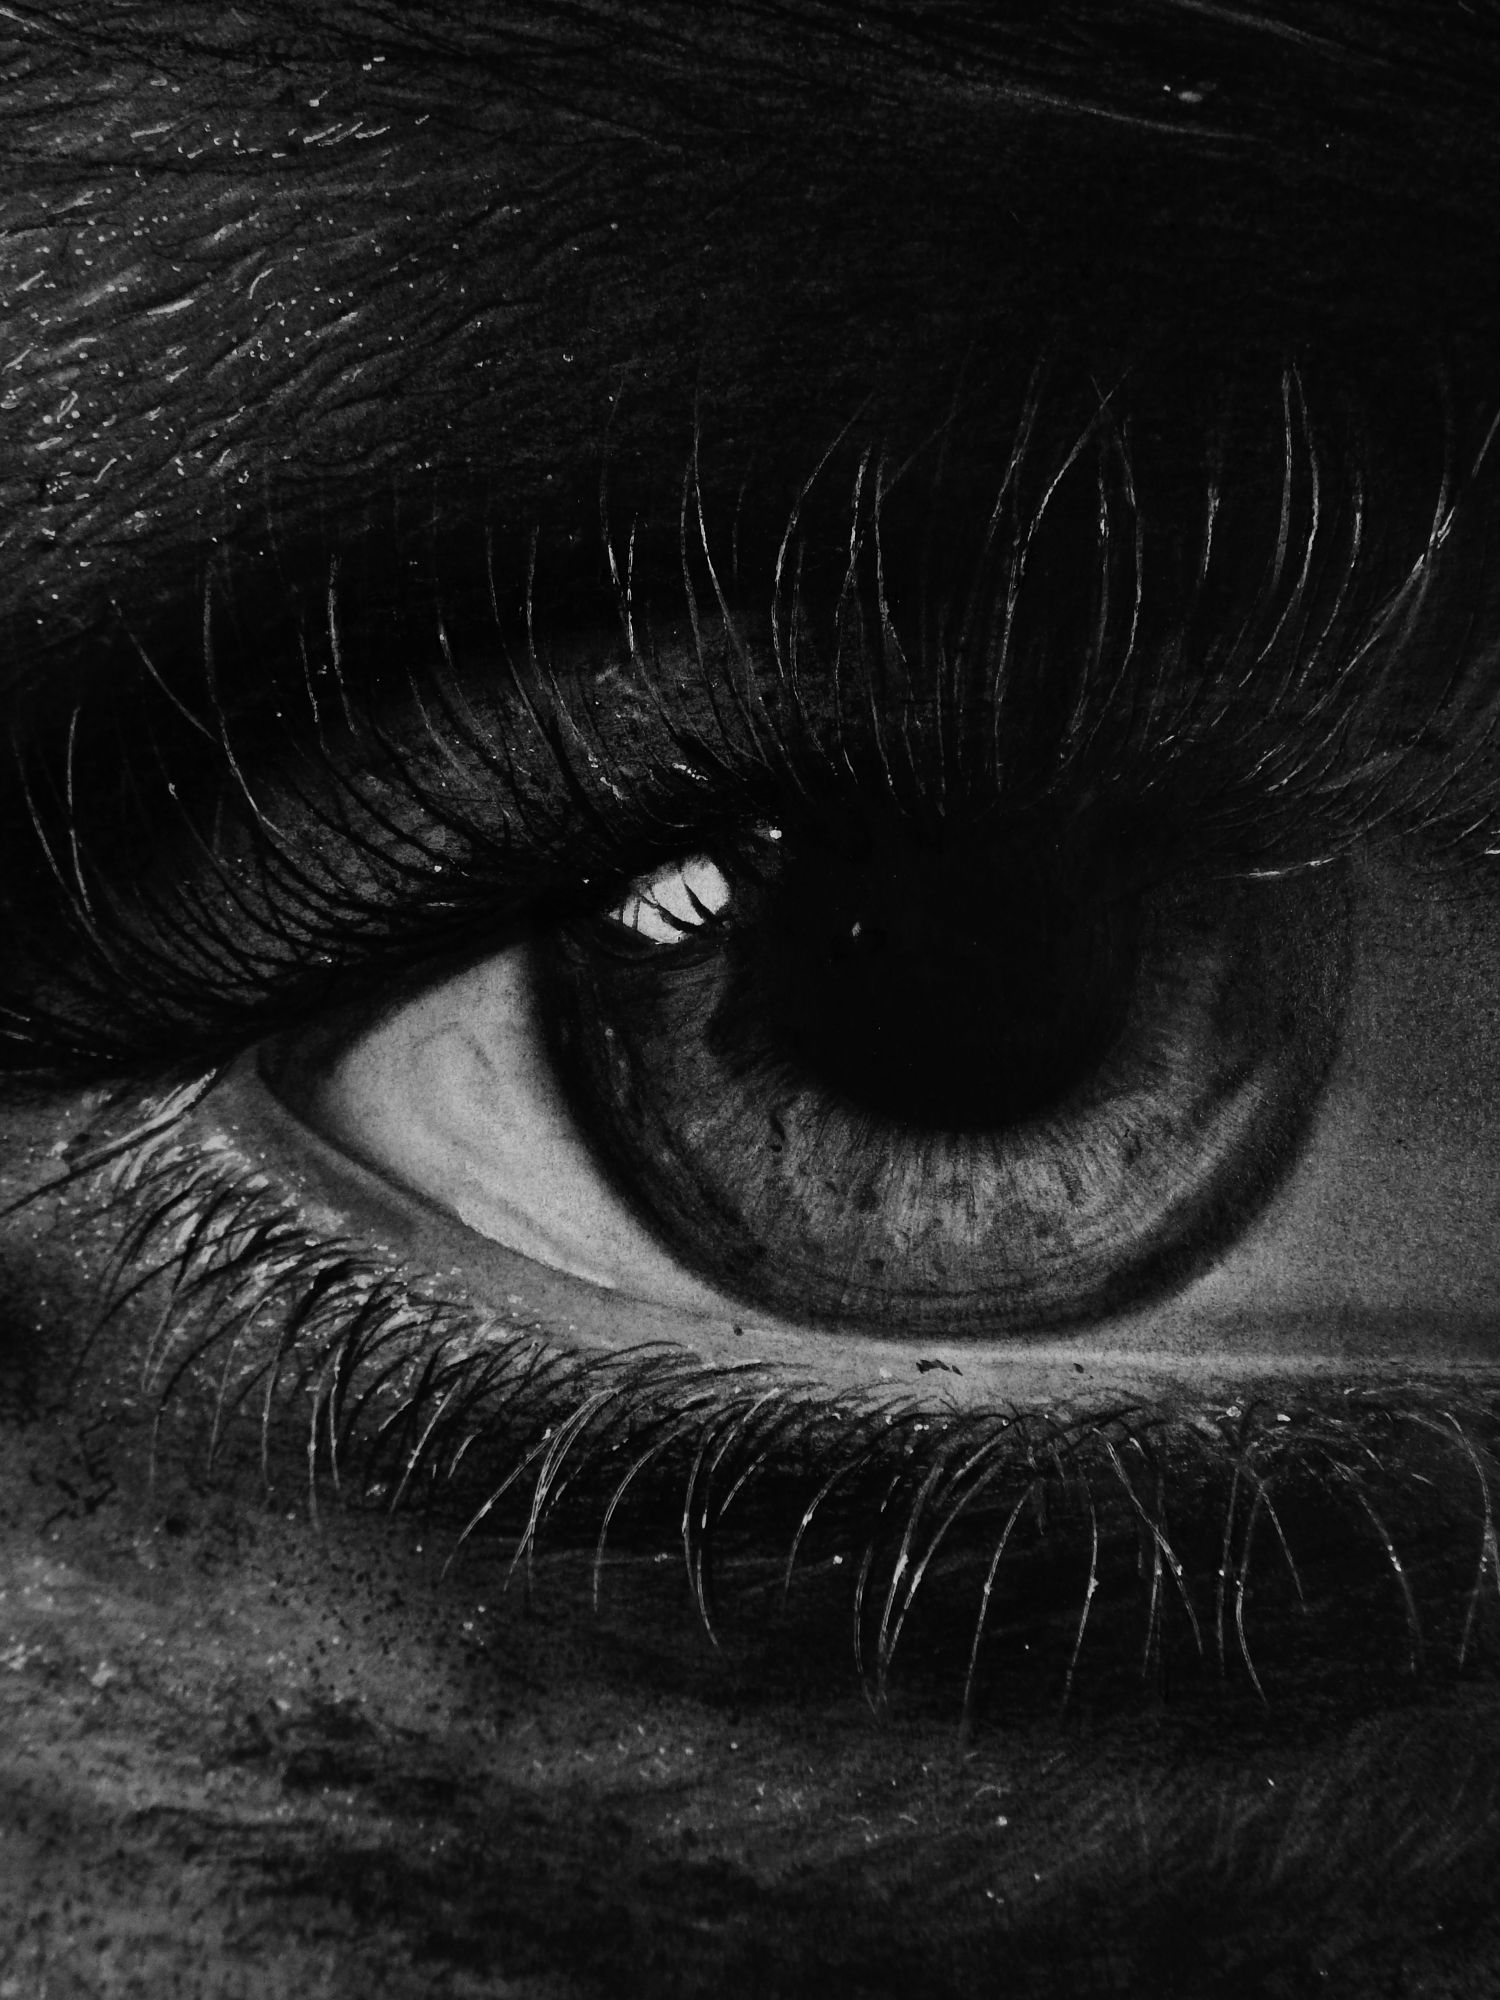 kit king drawing photo realism black white eye